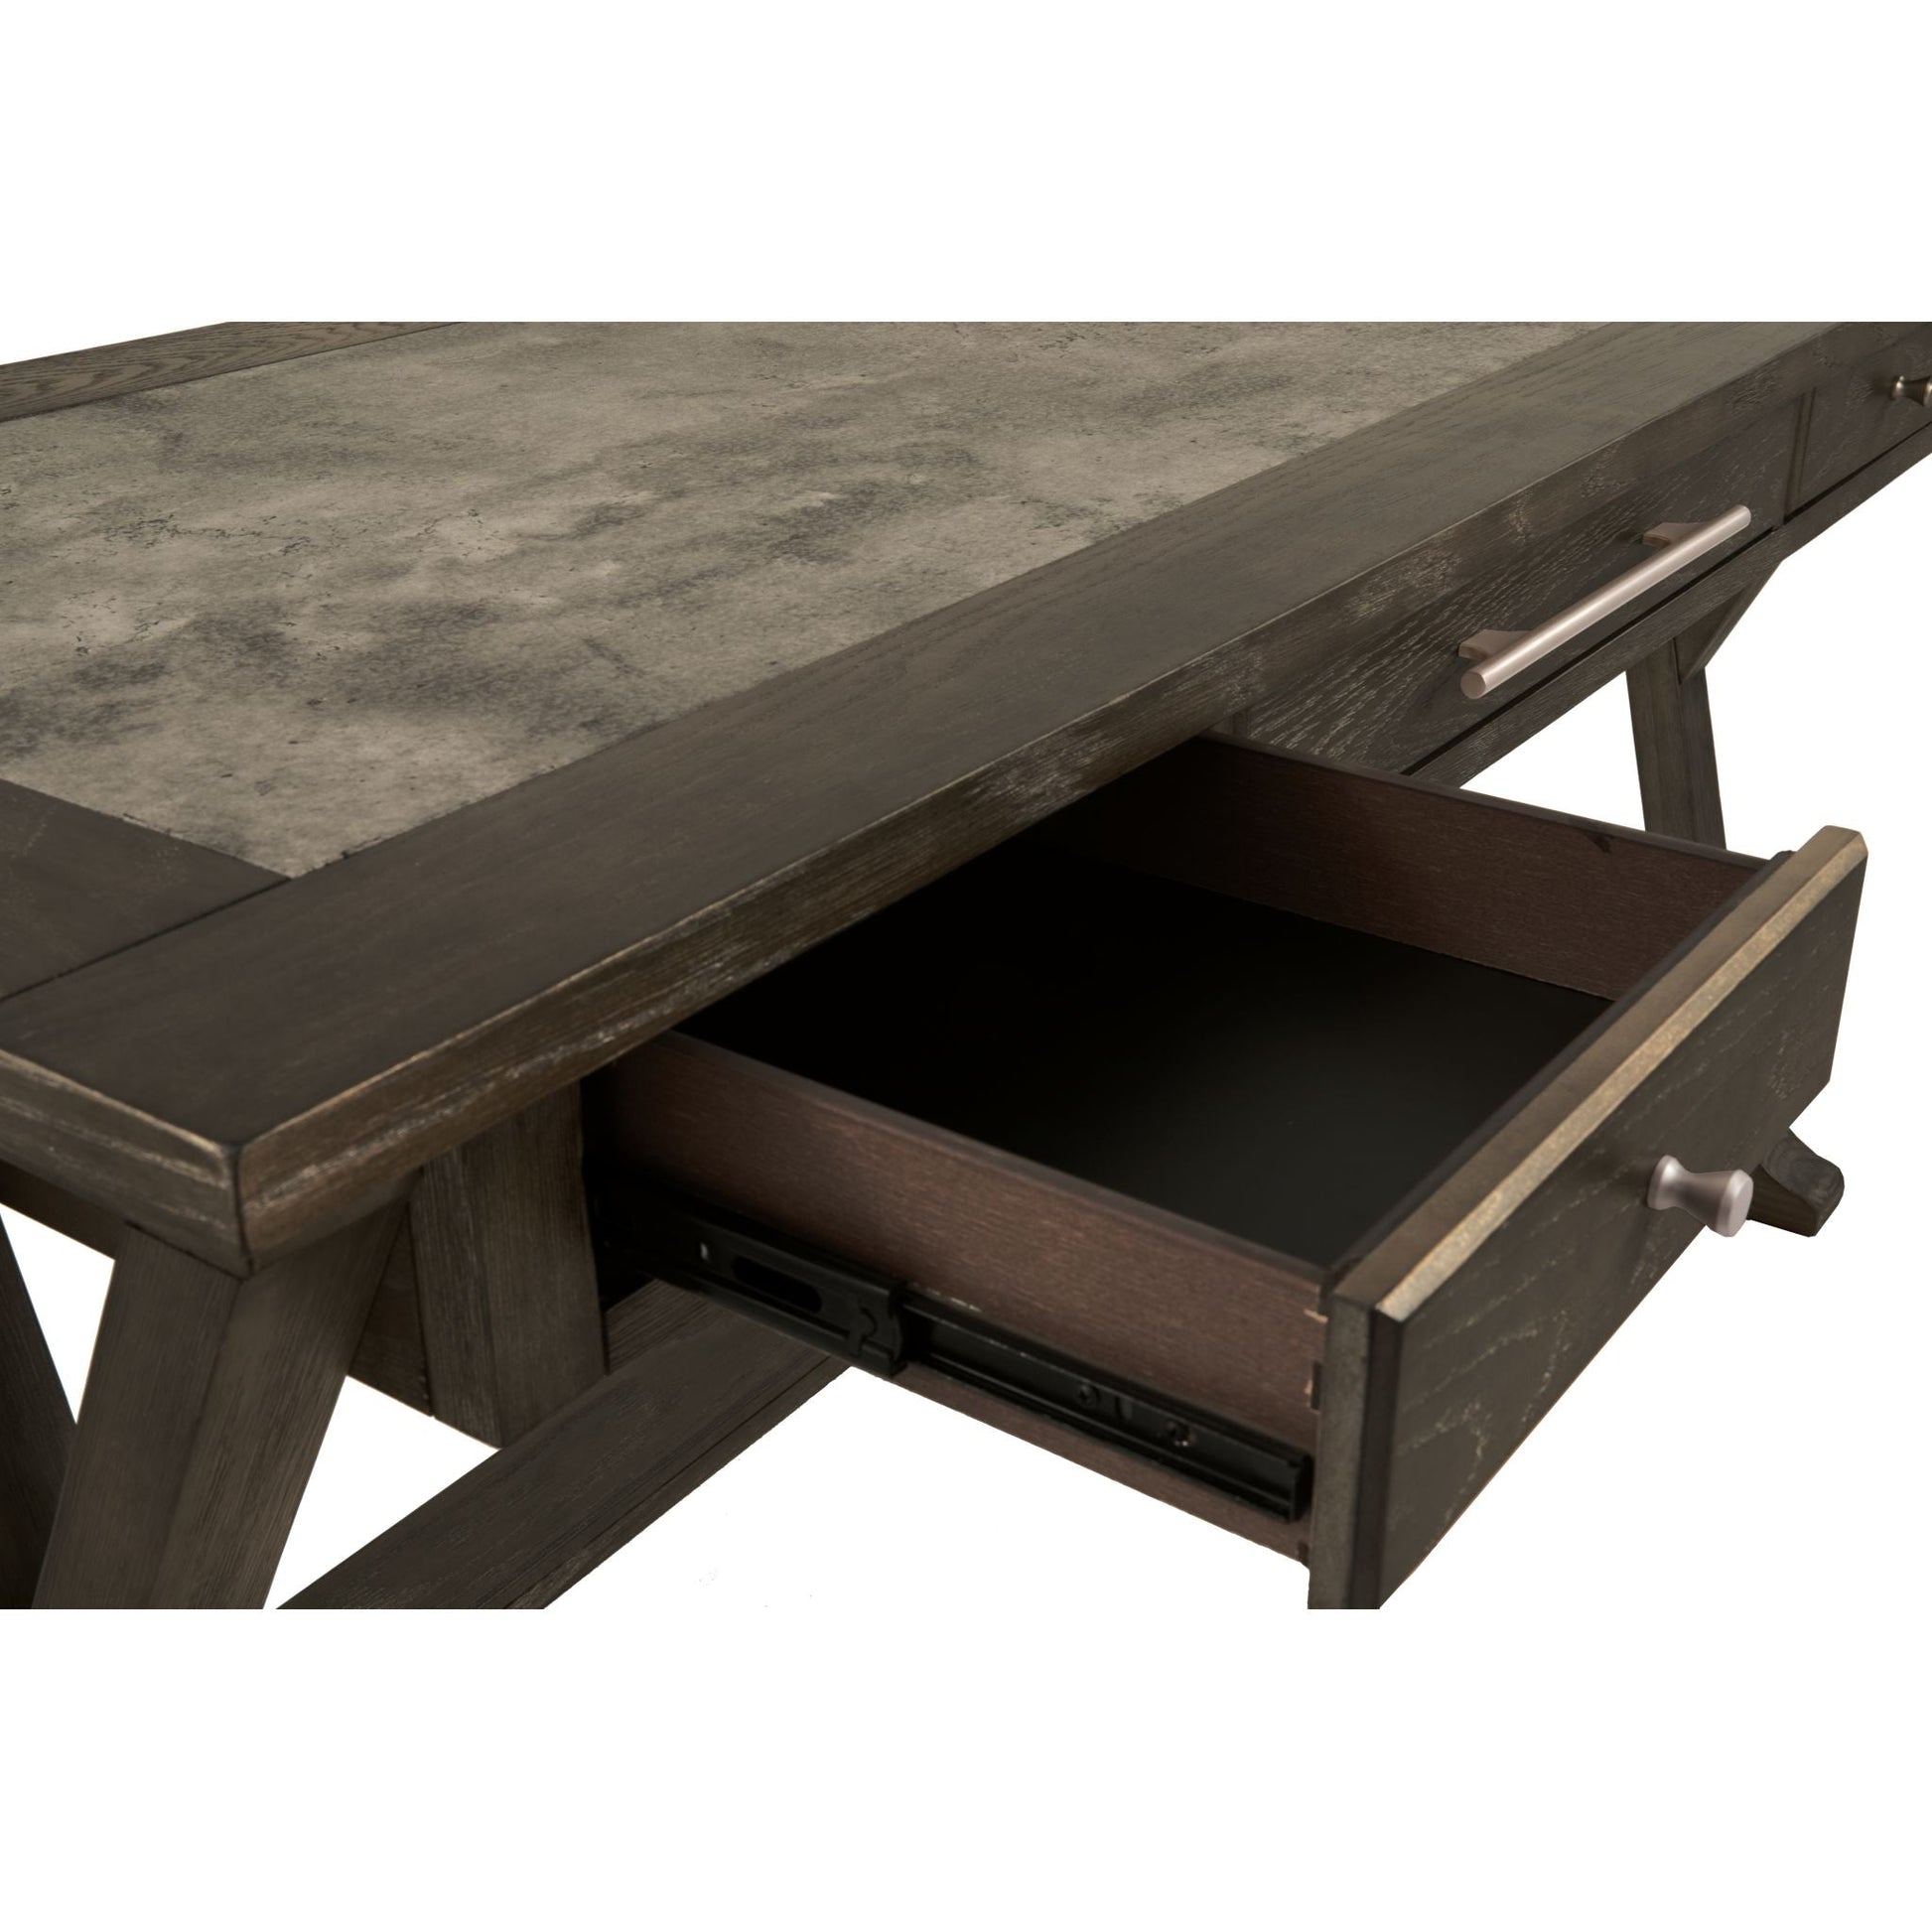 Luxenford Desk - Grayish Brown